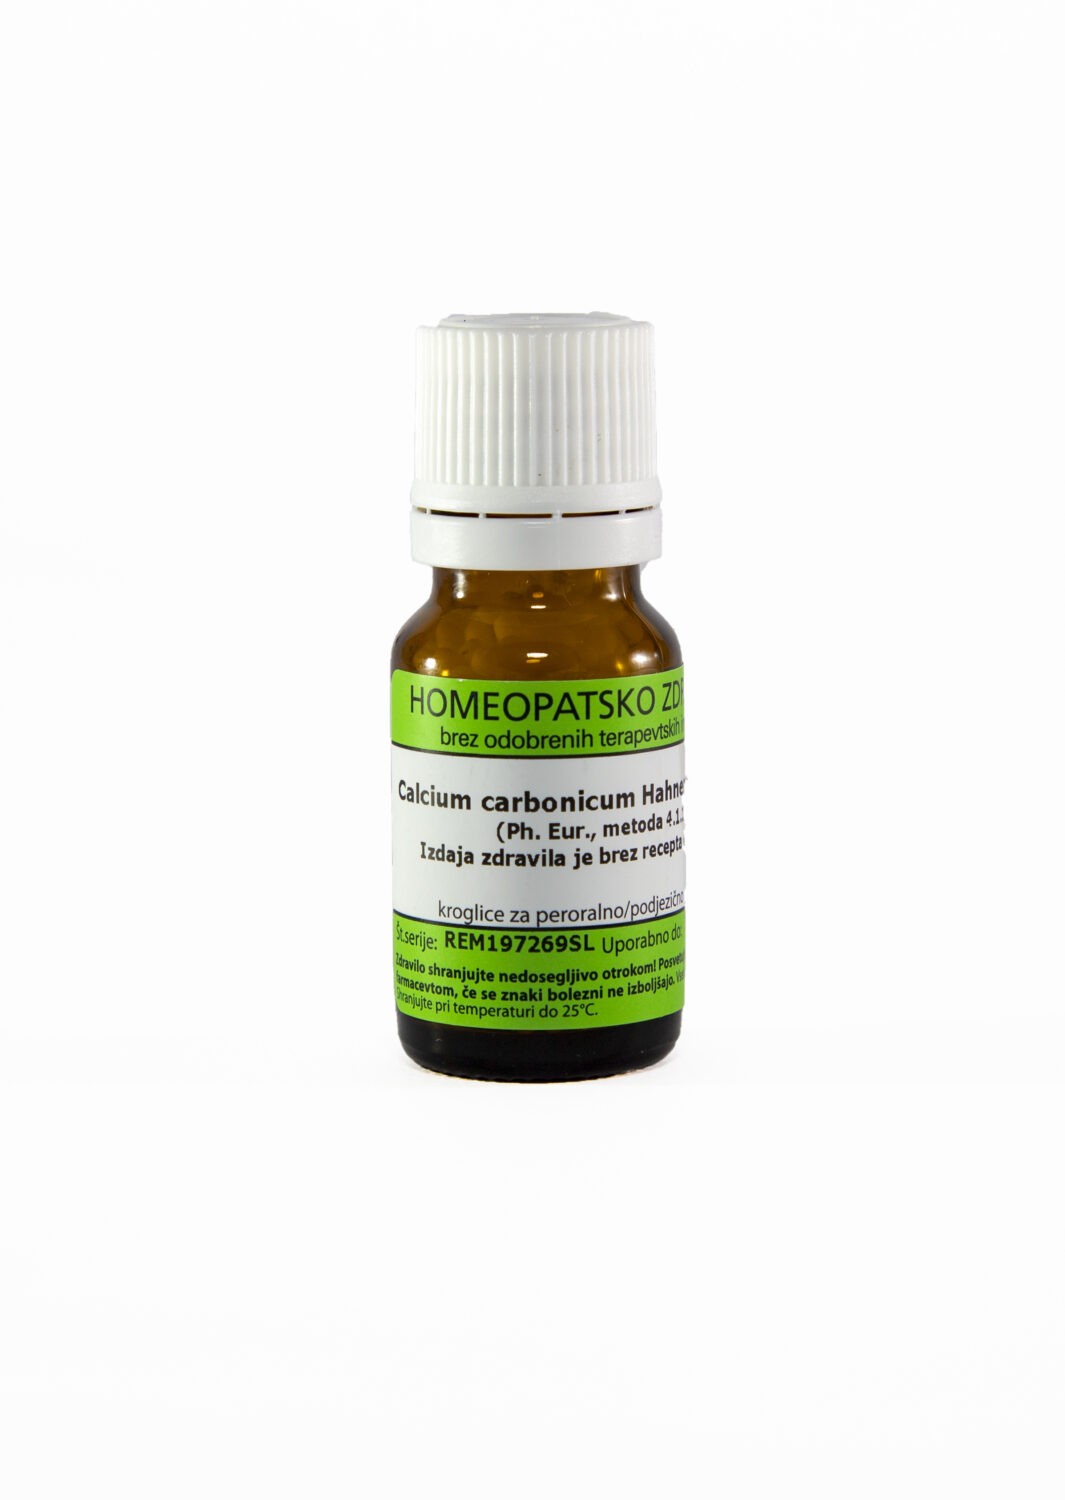 Calcium carbonicum Hahnemanni C200 homeopatske kroglice, 1 g